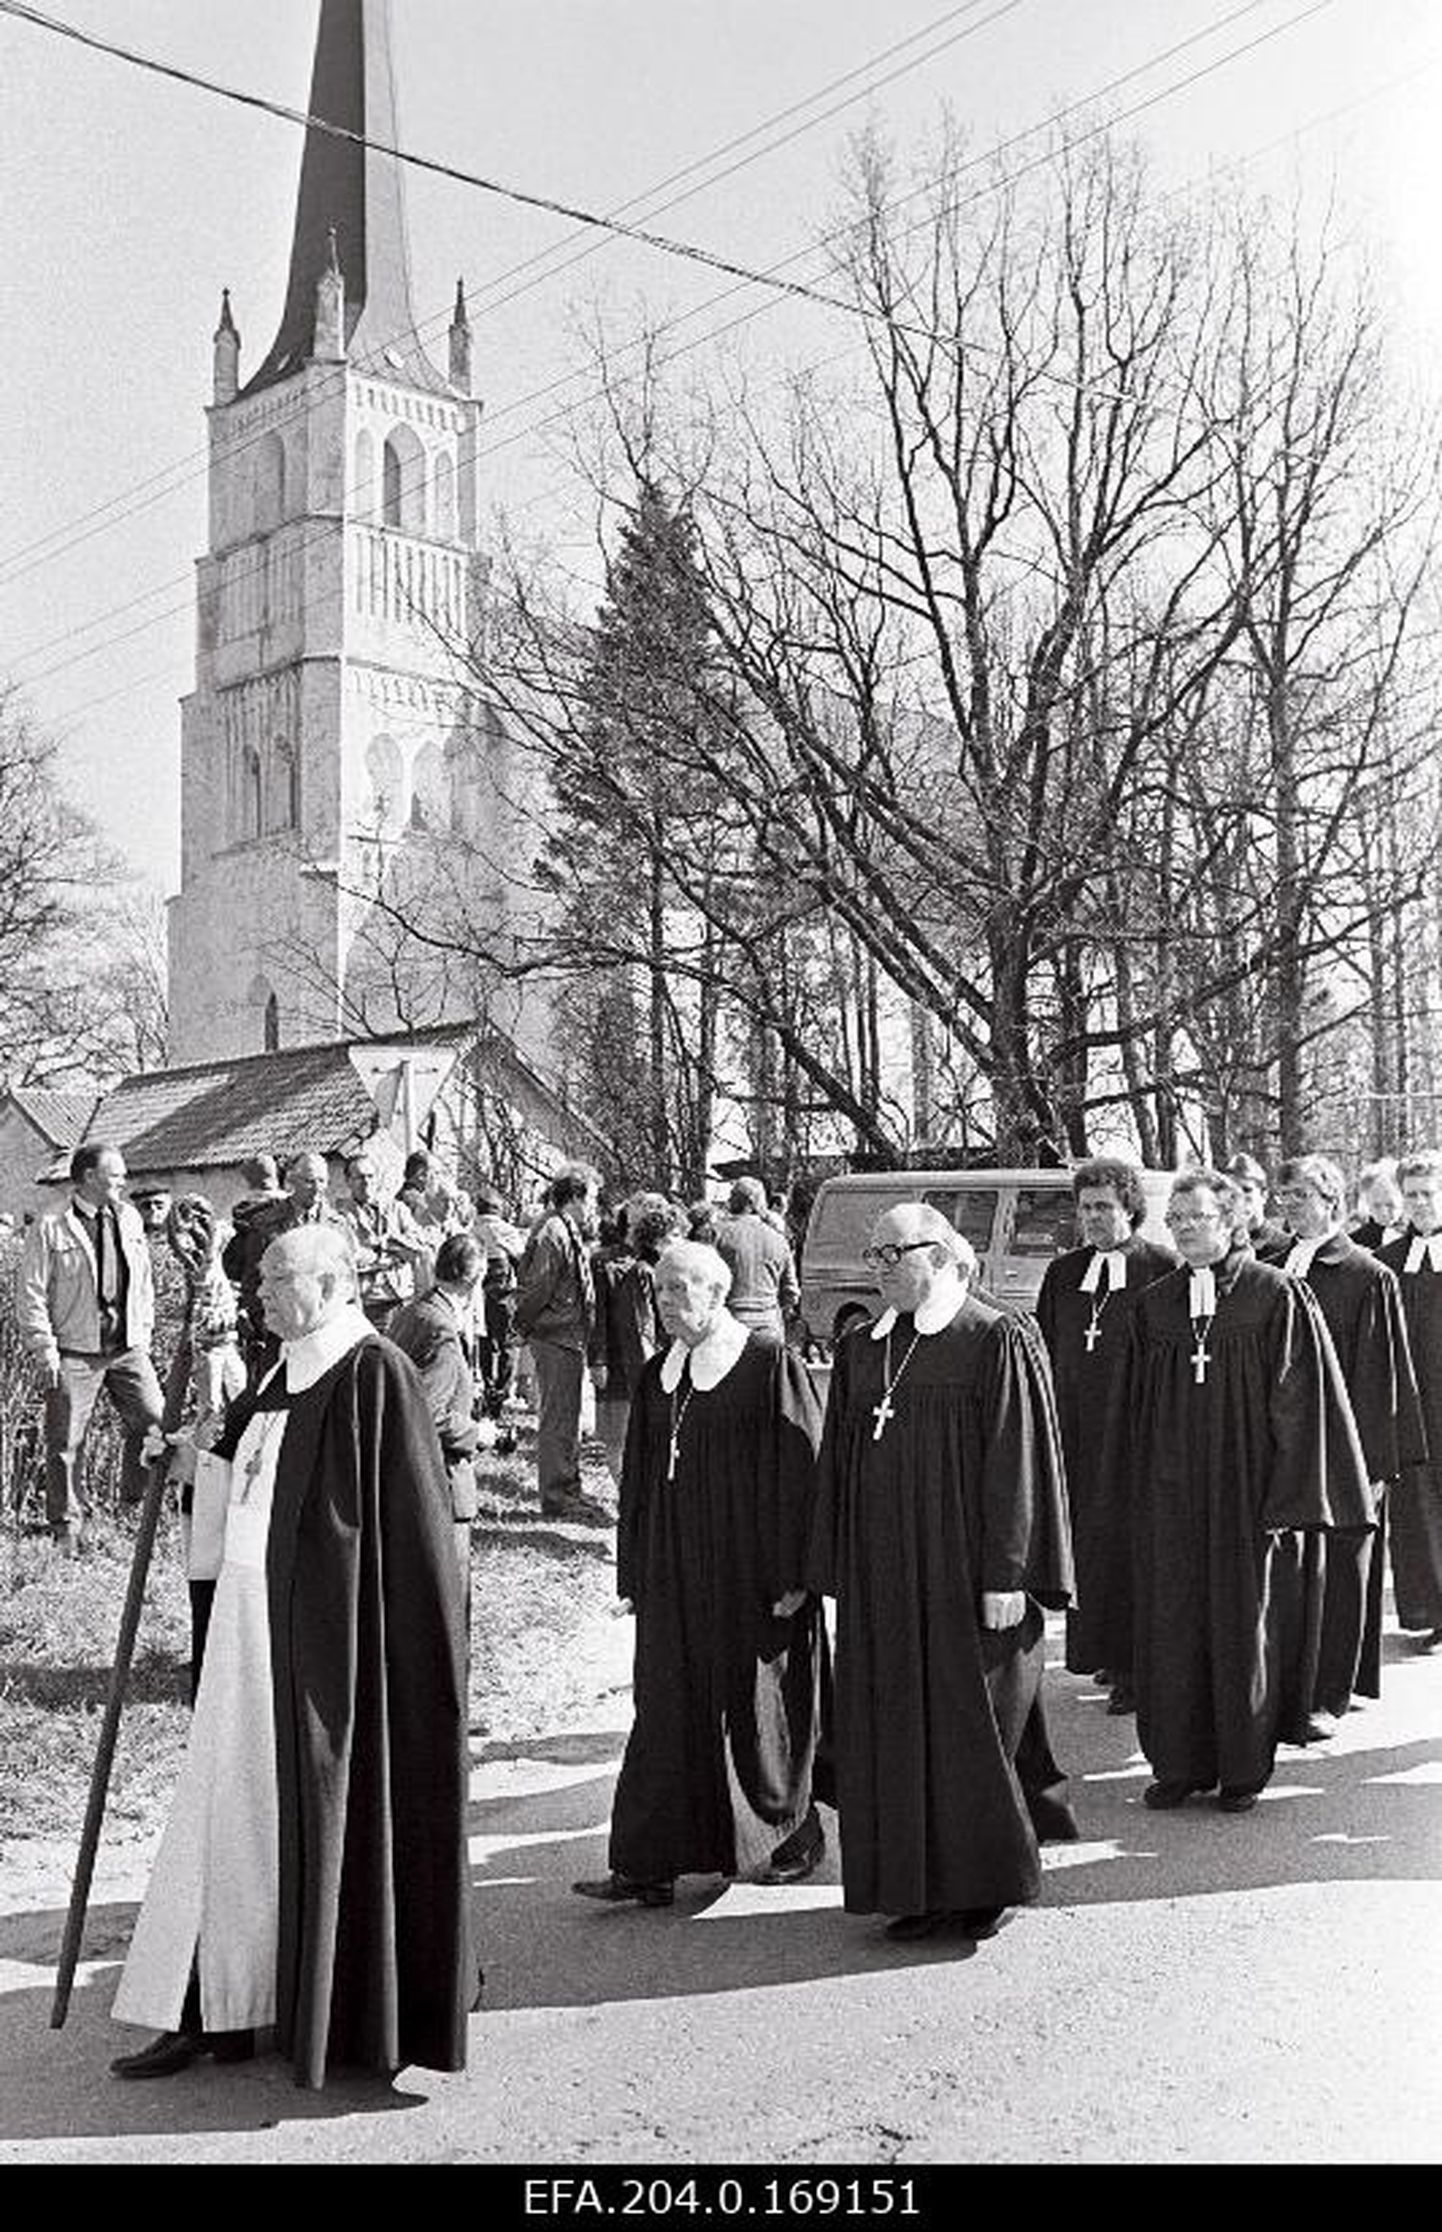 EELK Türi koguduse pastori Harald Meri ja tema majapidajanna Valve Kleini matused, matuserongkäigu eesotsas EELK peapiiskop Kuno Pajula. Aprill 1990.